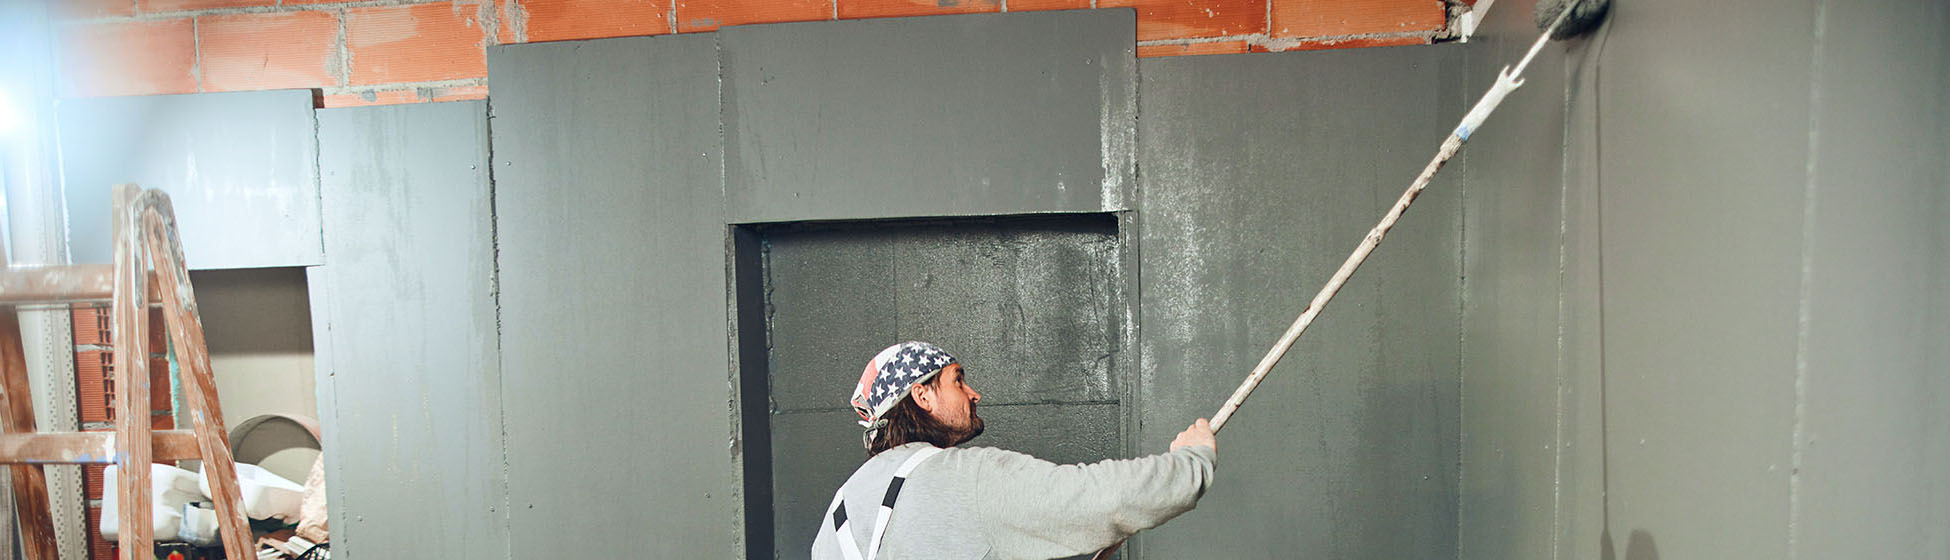 Exemple devis peinture facade exterieure